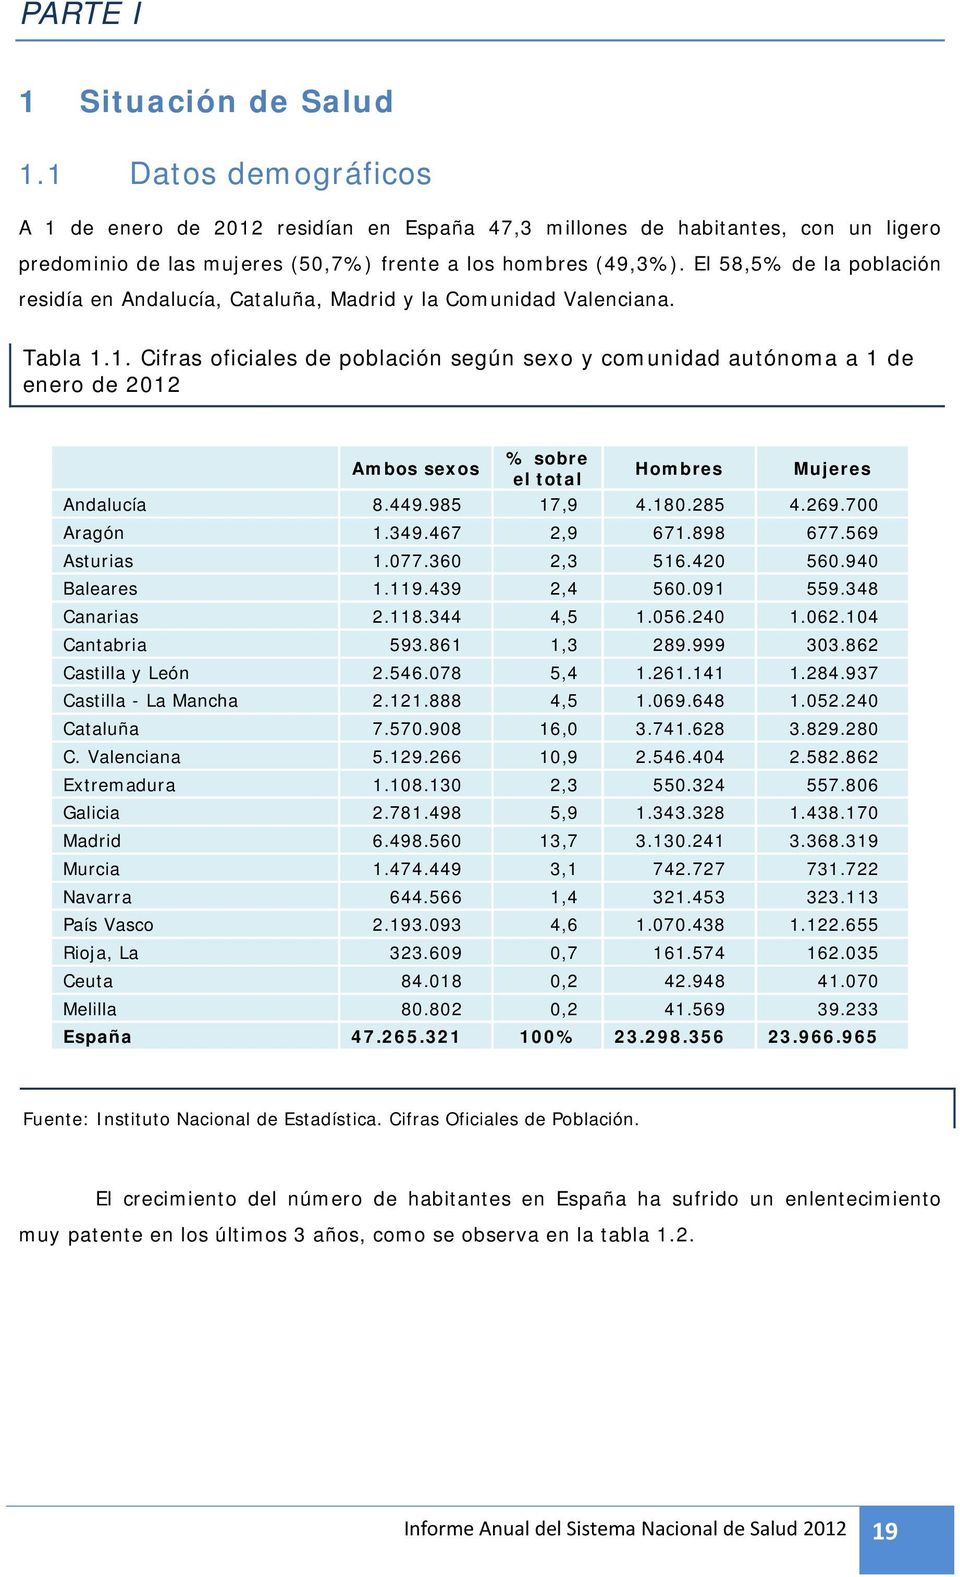 1. Cifras oficiales de población según sexo y comunidad autónoma a 1 de enero de 2012 Ambos sexos % sobre el total Hombres Mujeres Andalucía 8.449.985 17,9 4.180.285 4.269.700 Aragón 1.349.